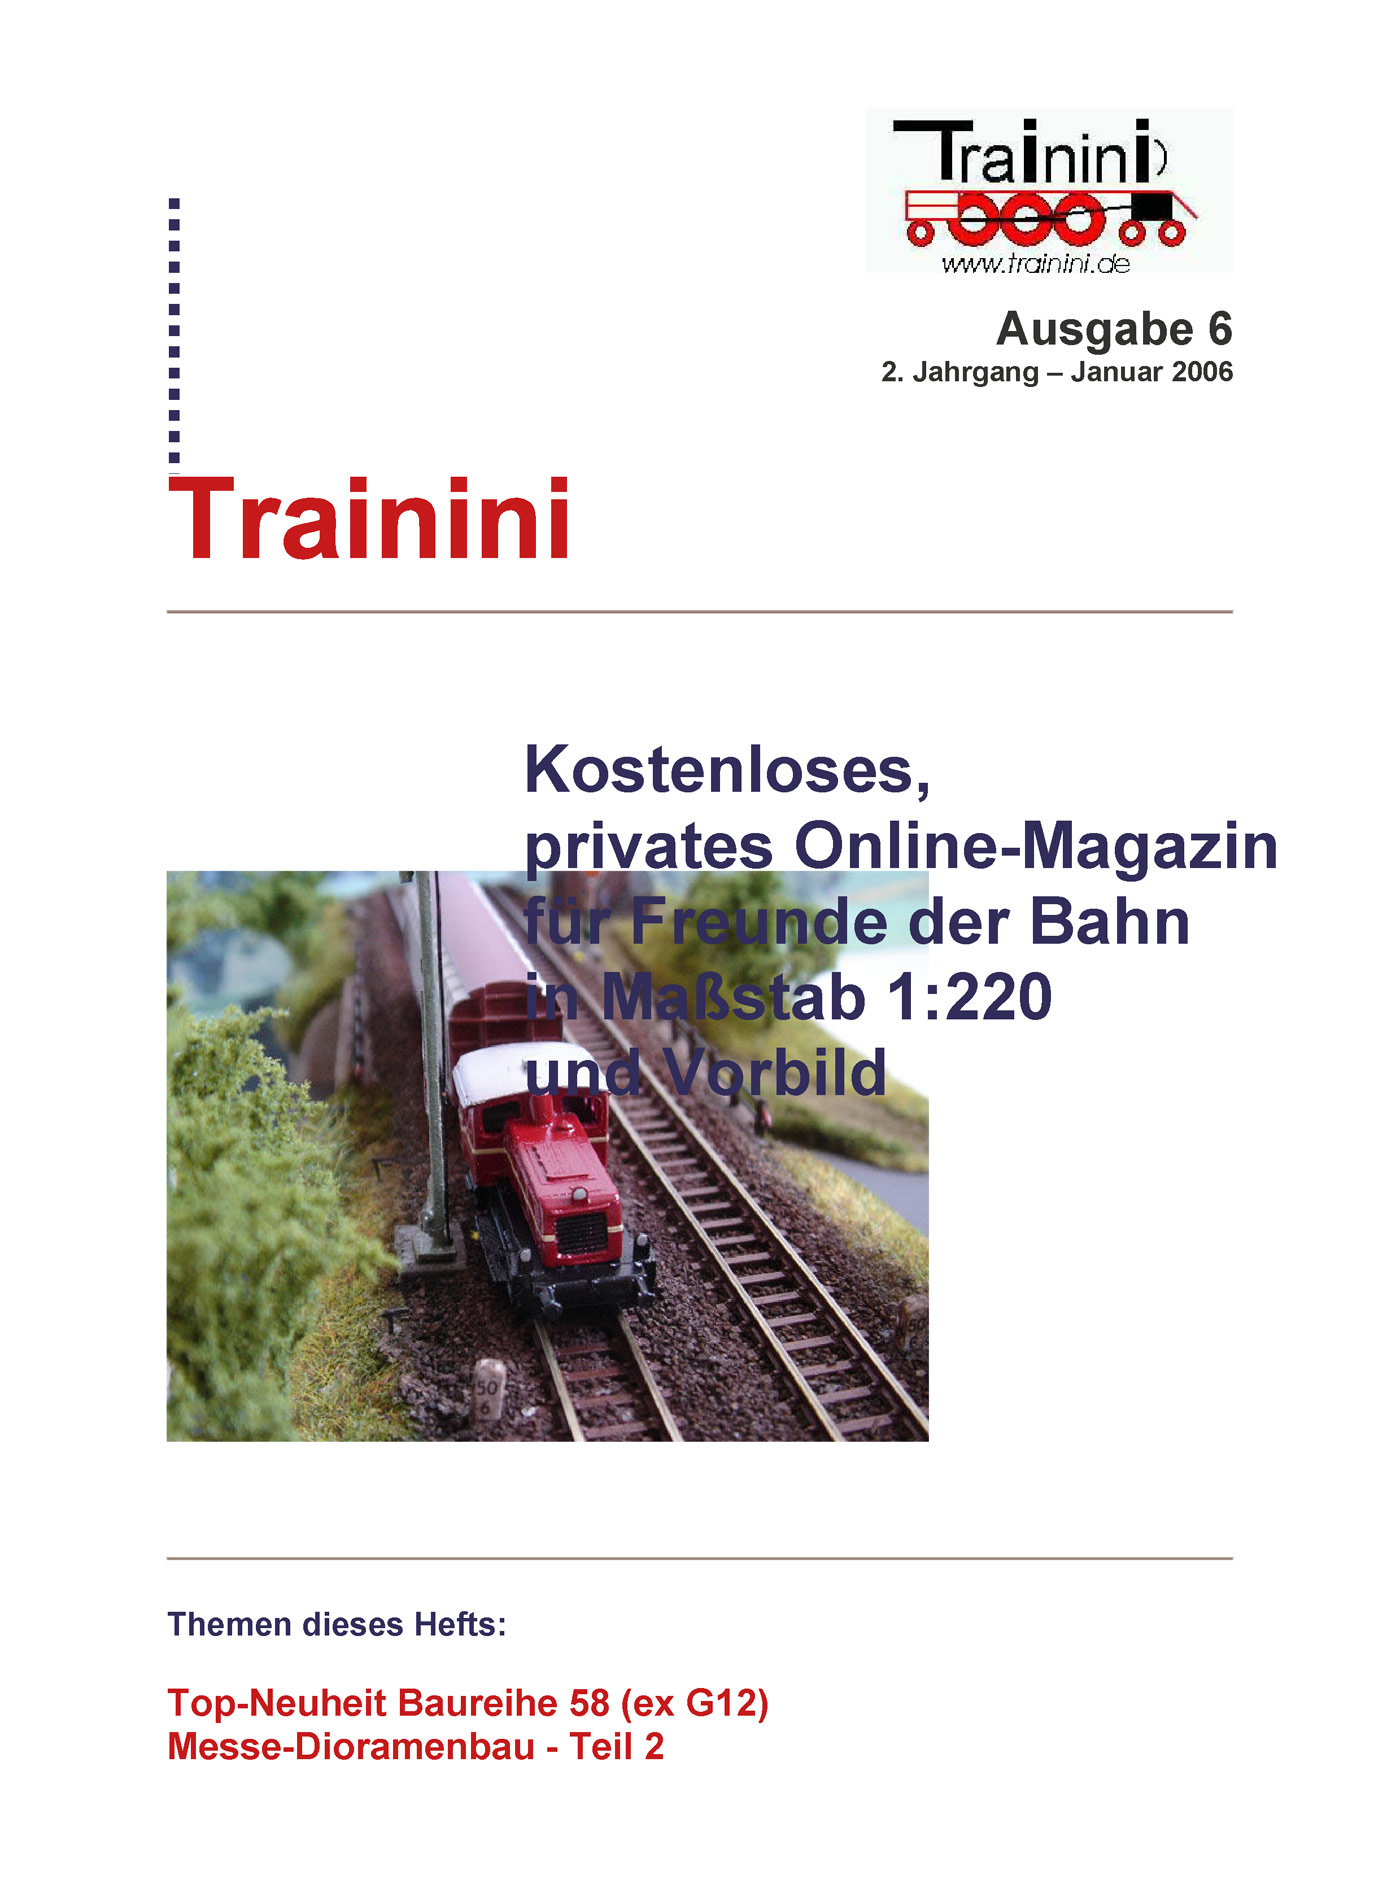 Trainini Ausgabe Januar 2006